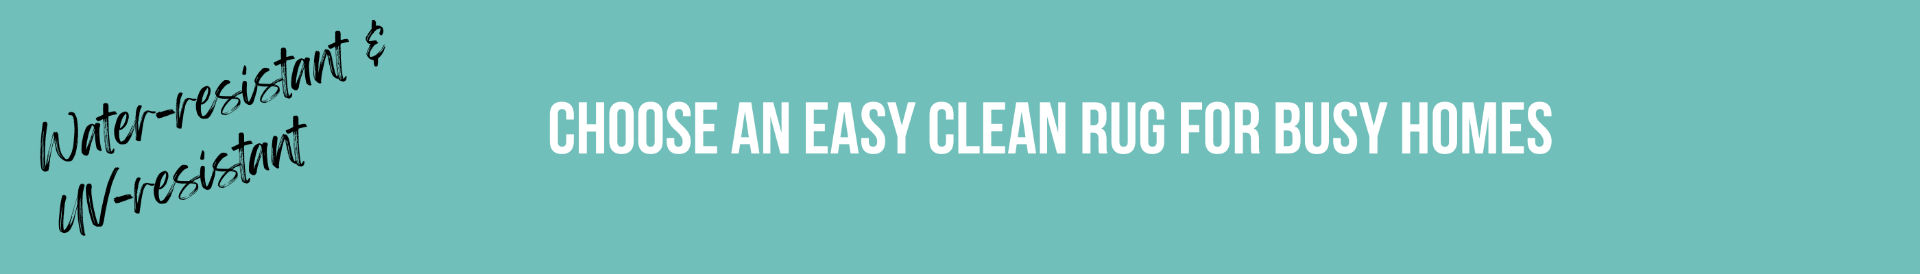 Easy Clean Rugs